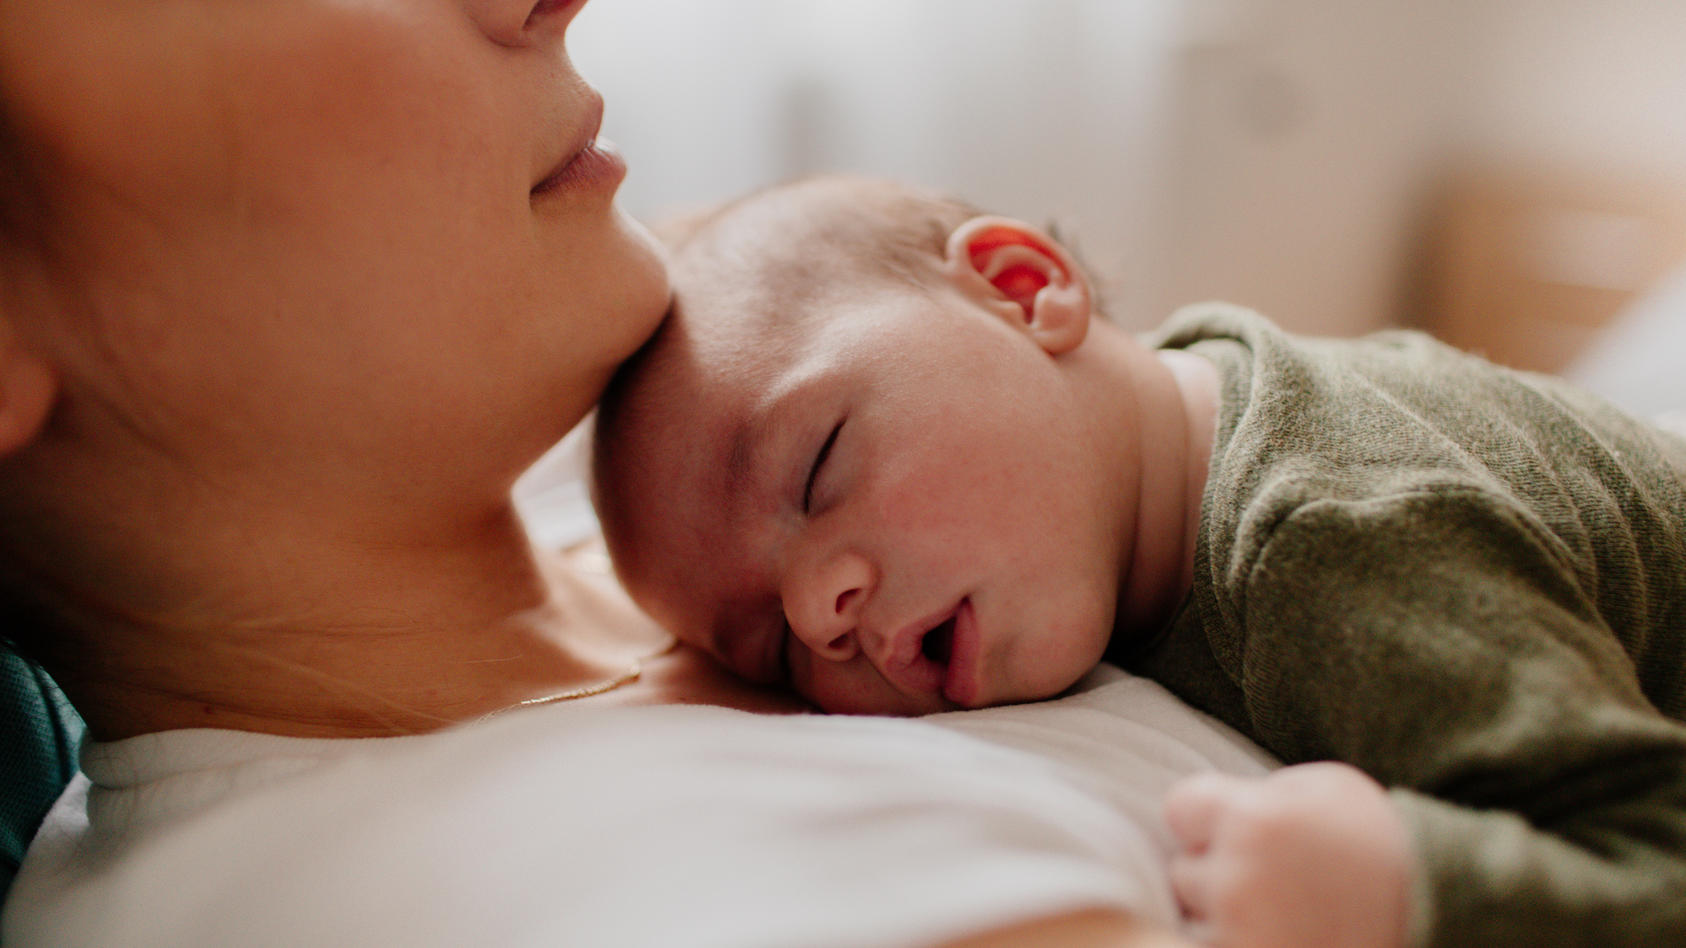 Schläft mein Baby genug? - Diese Frage stellen sich viele Eltern. Wir verraten, wie viel Schlaf ein Baby wirklich braucht.